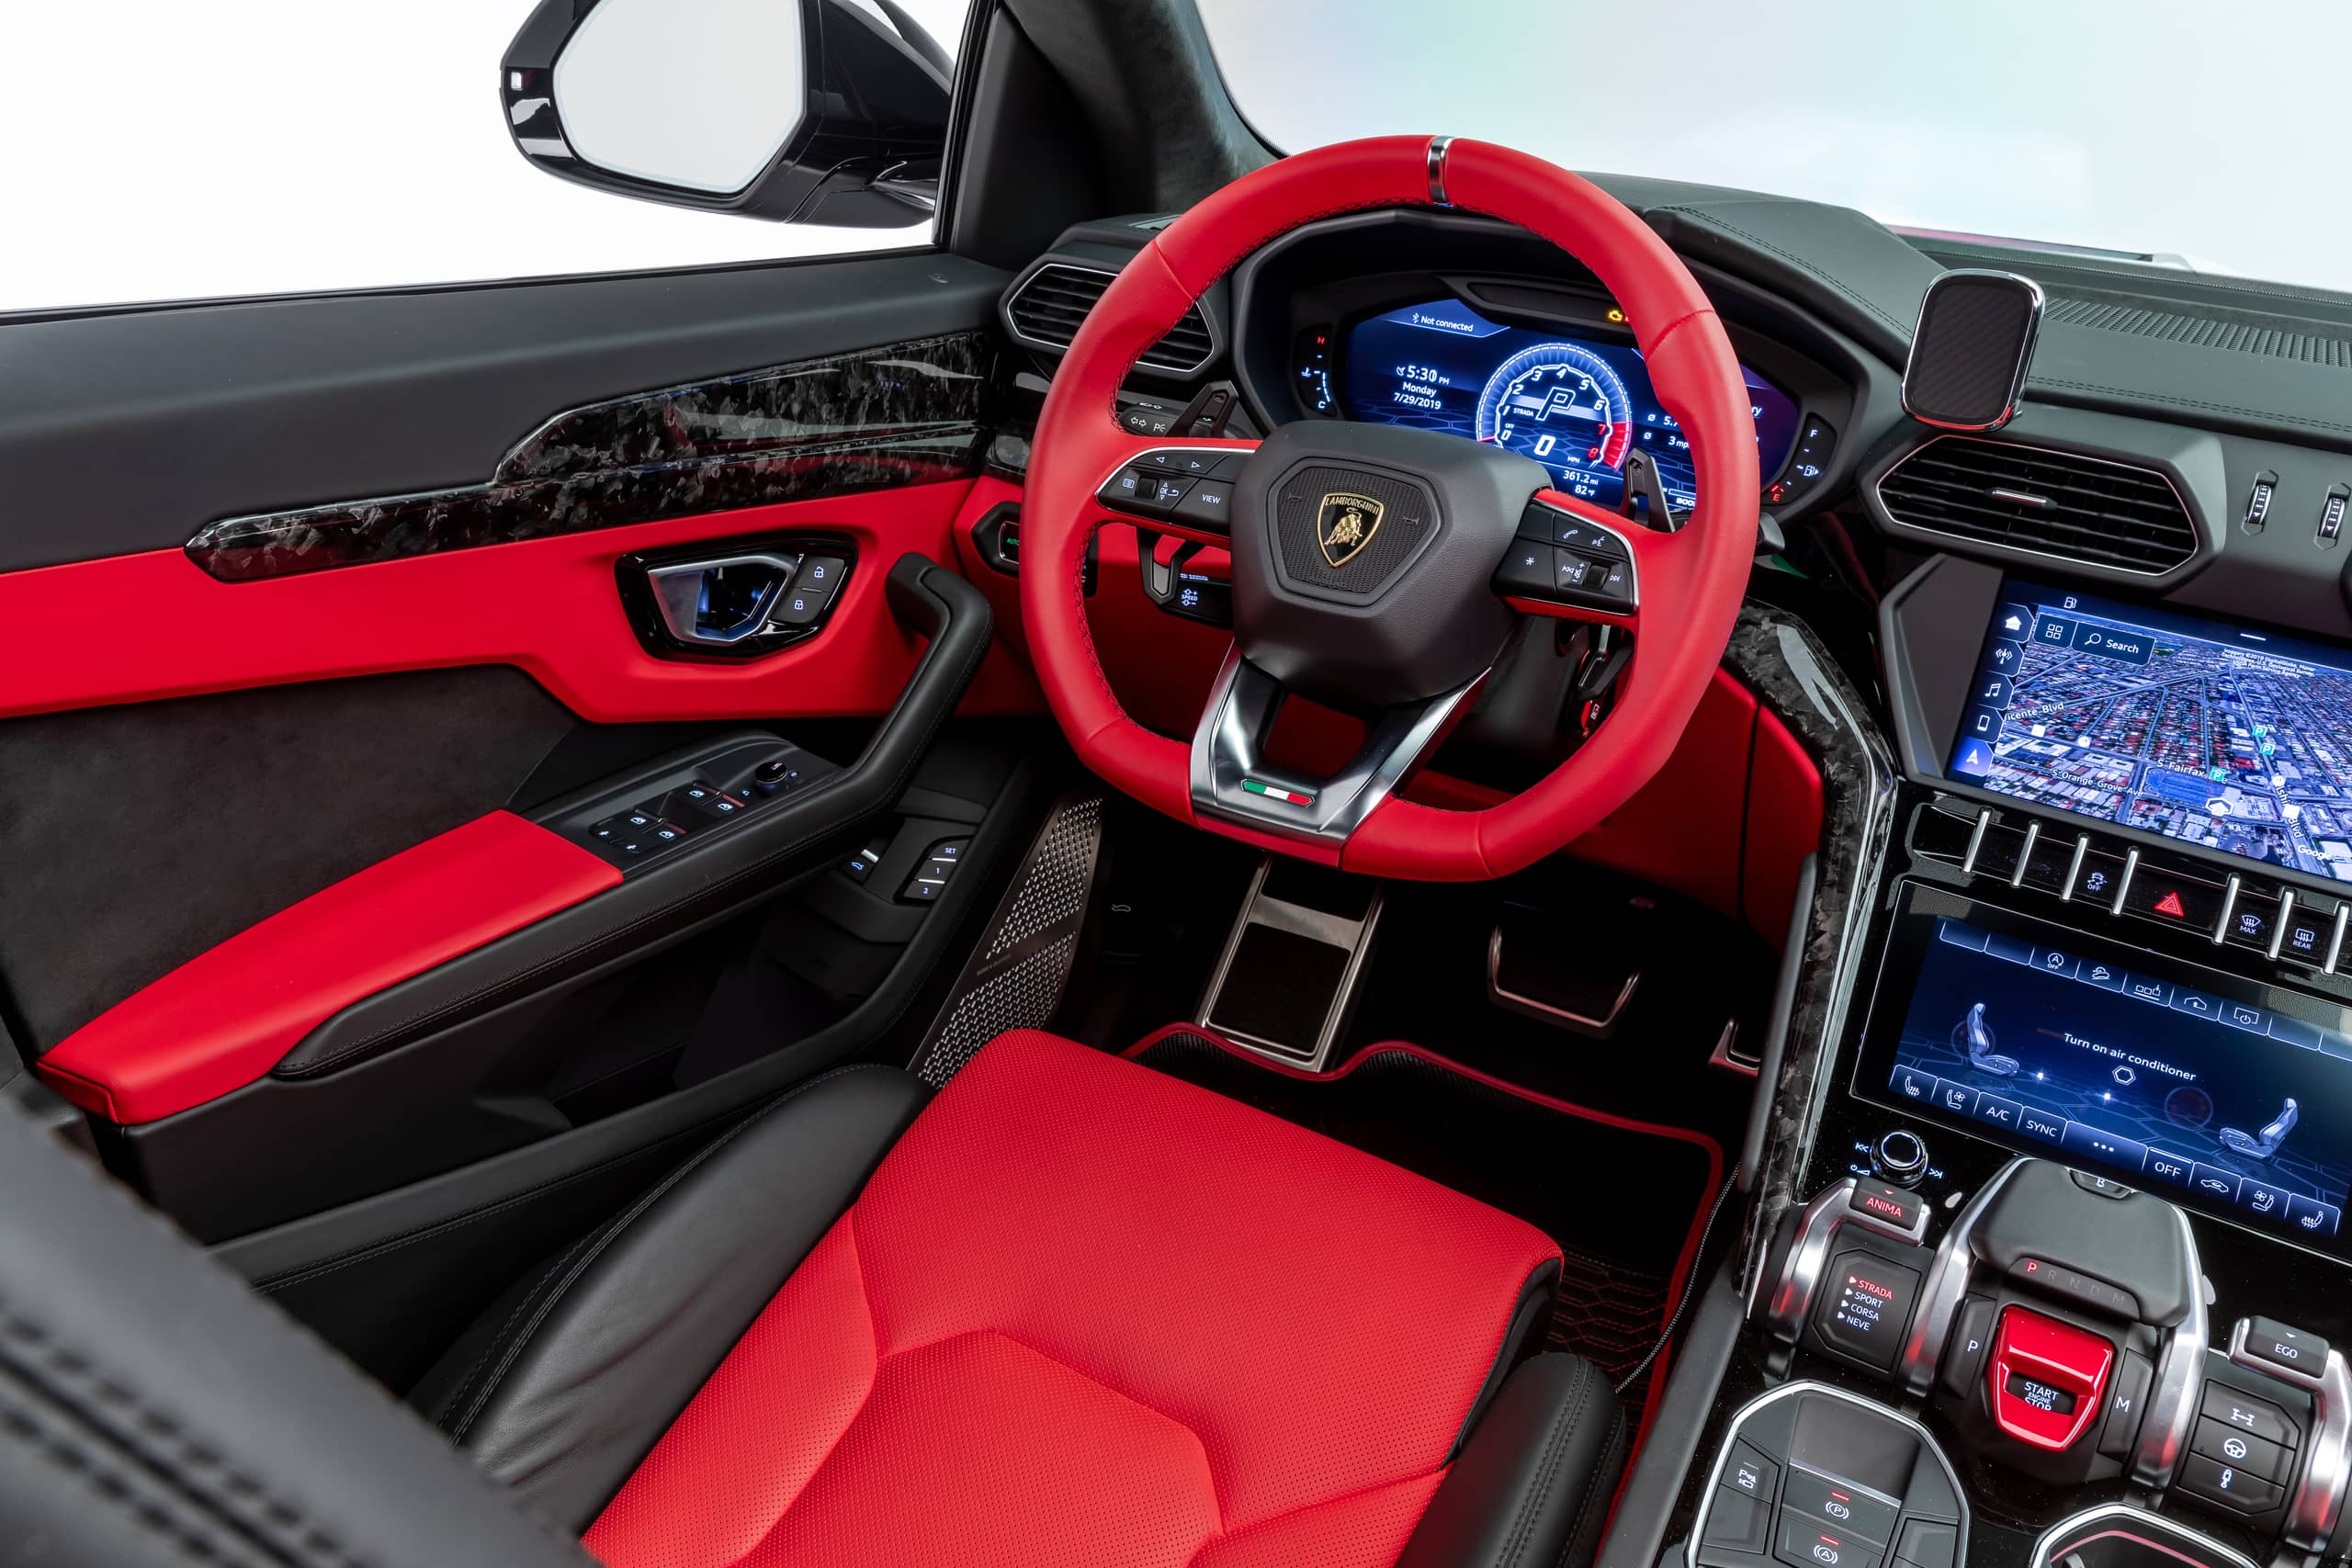 1016 Industries Lamborghini Urus Complete Interior Trim Kit